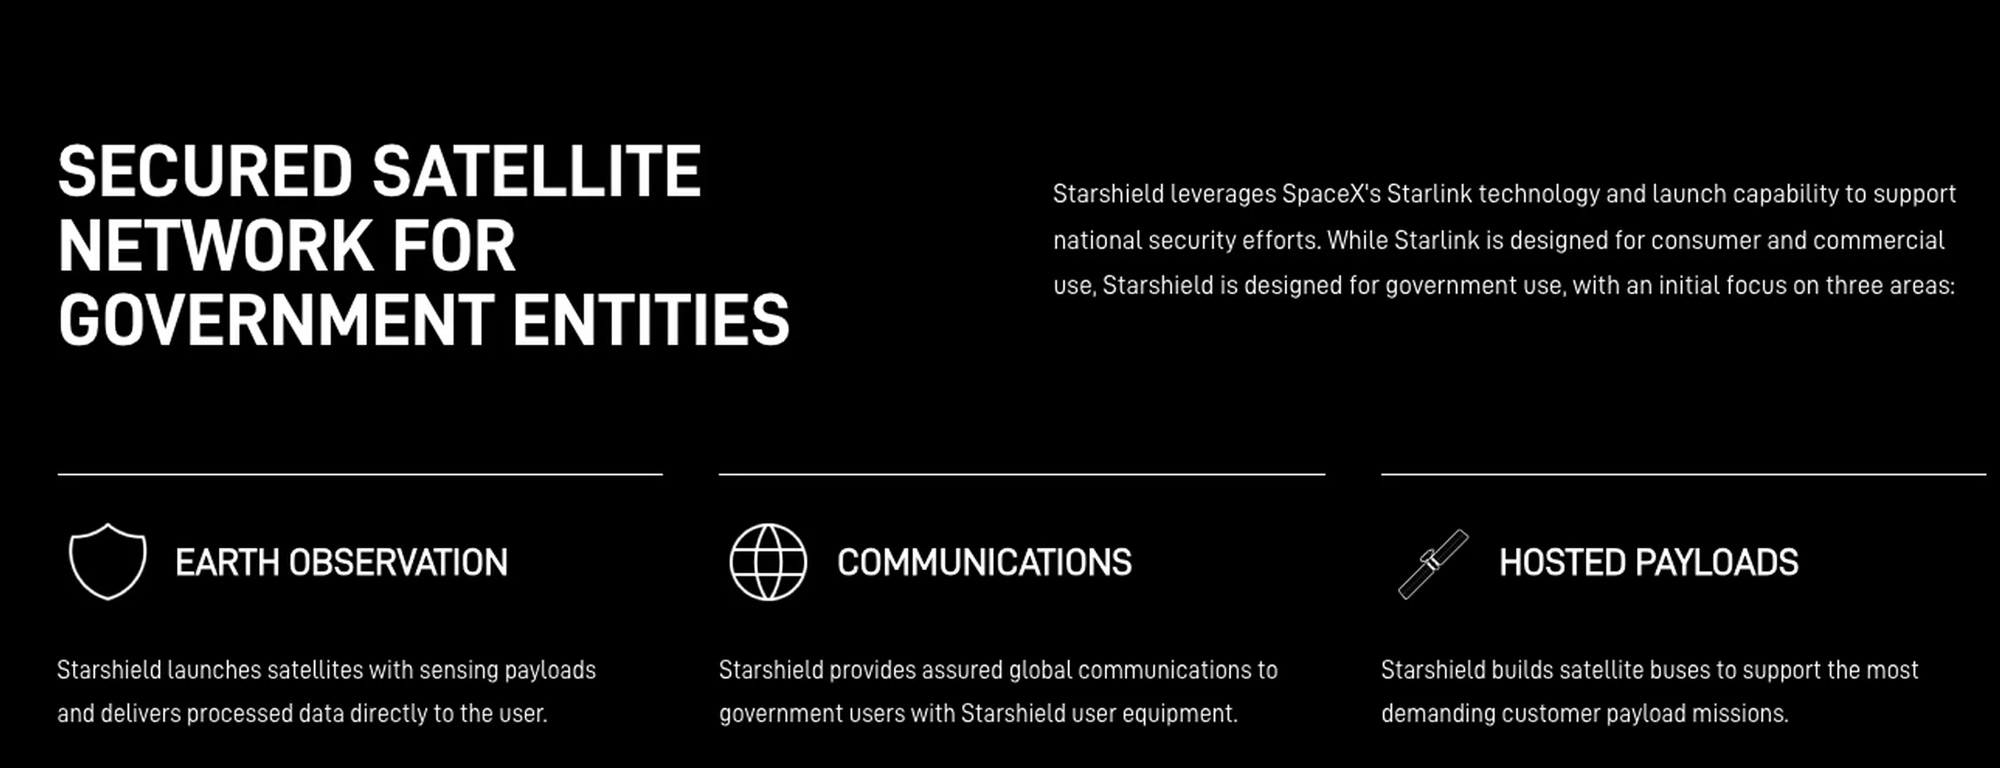 СМИ: SpaceX строит сеть шпионских спутников для разведки США